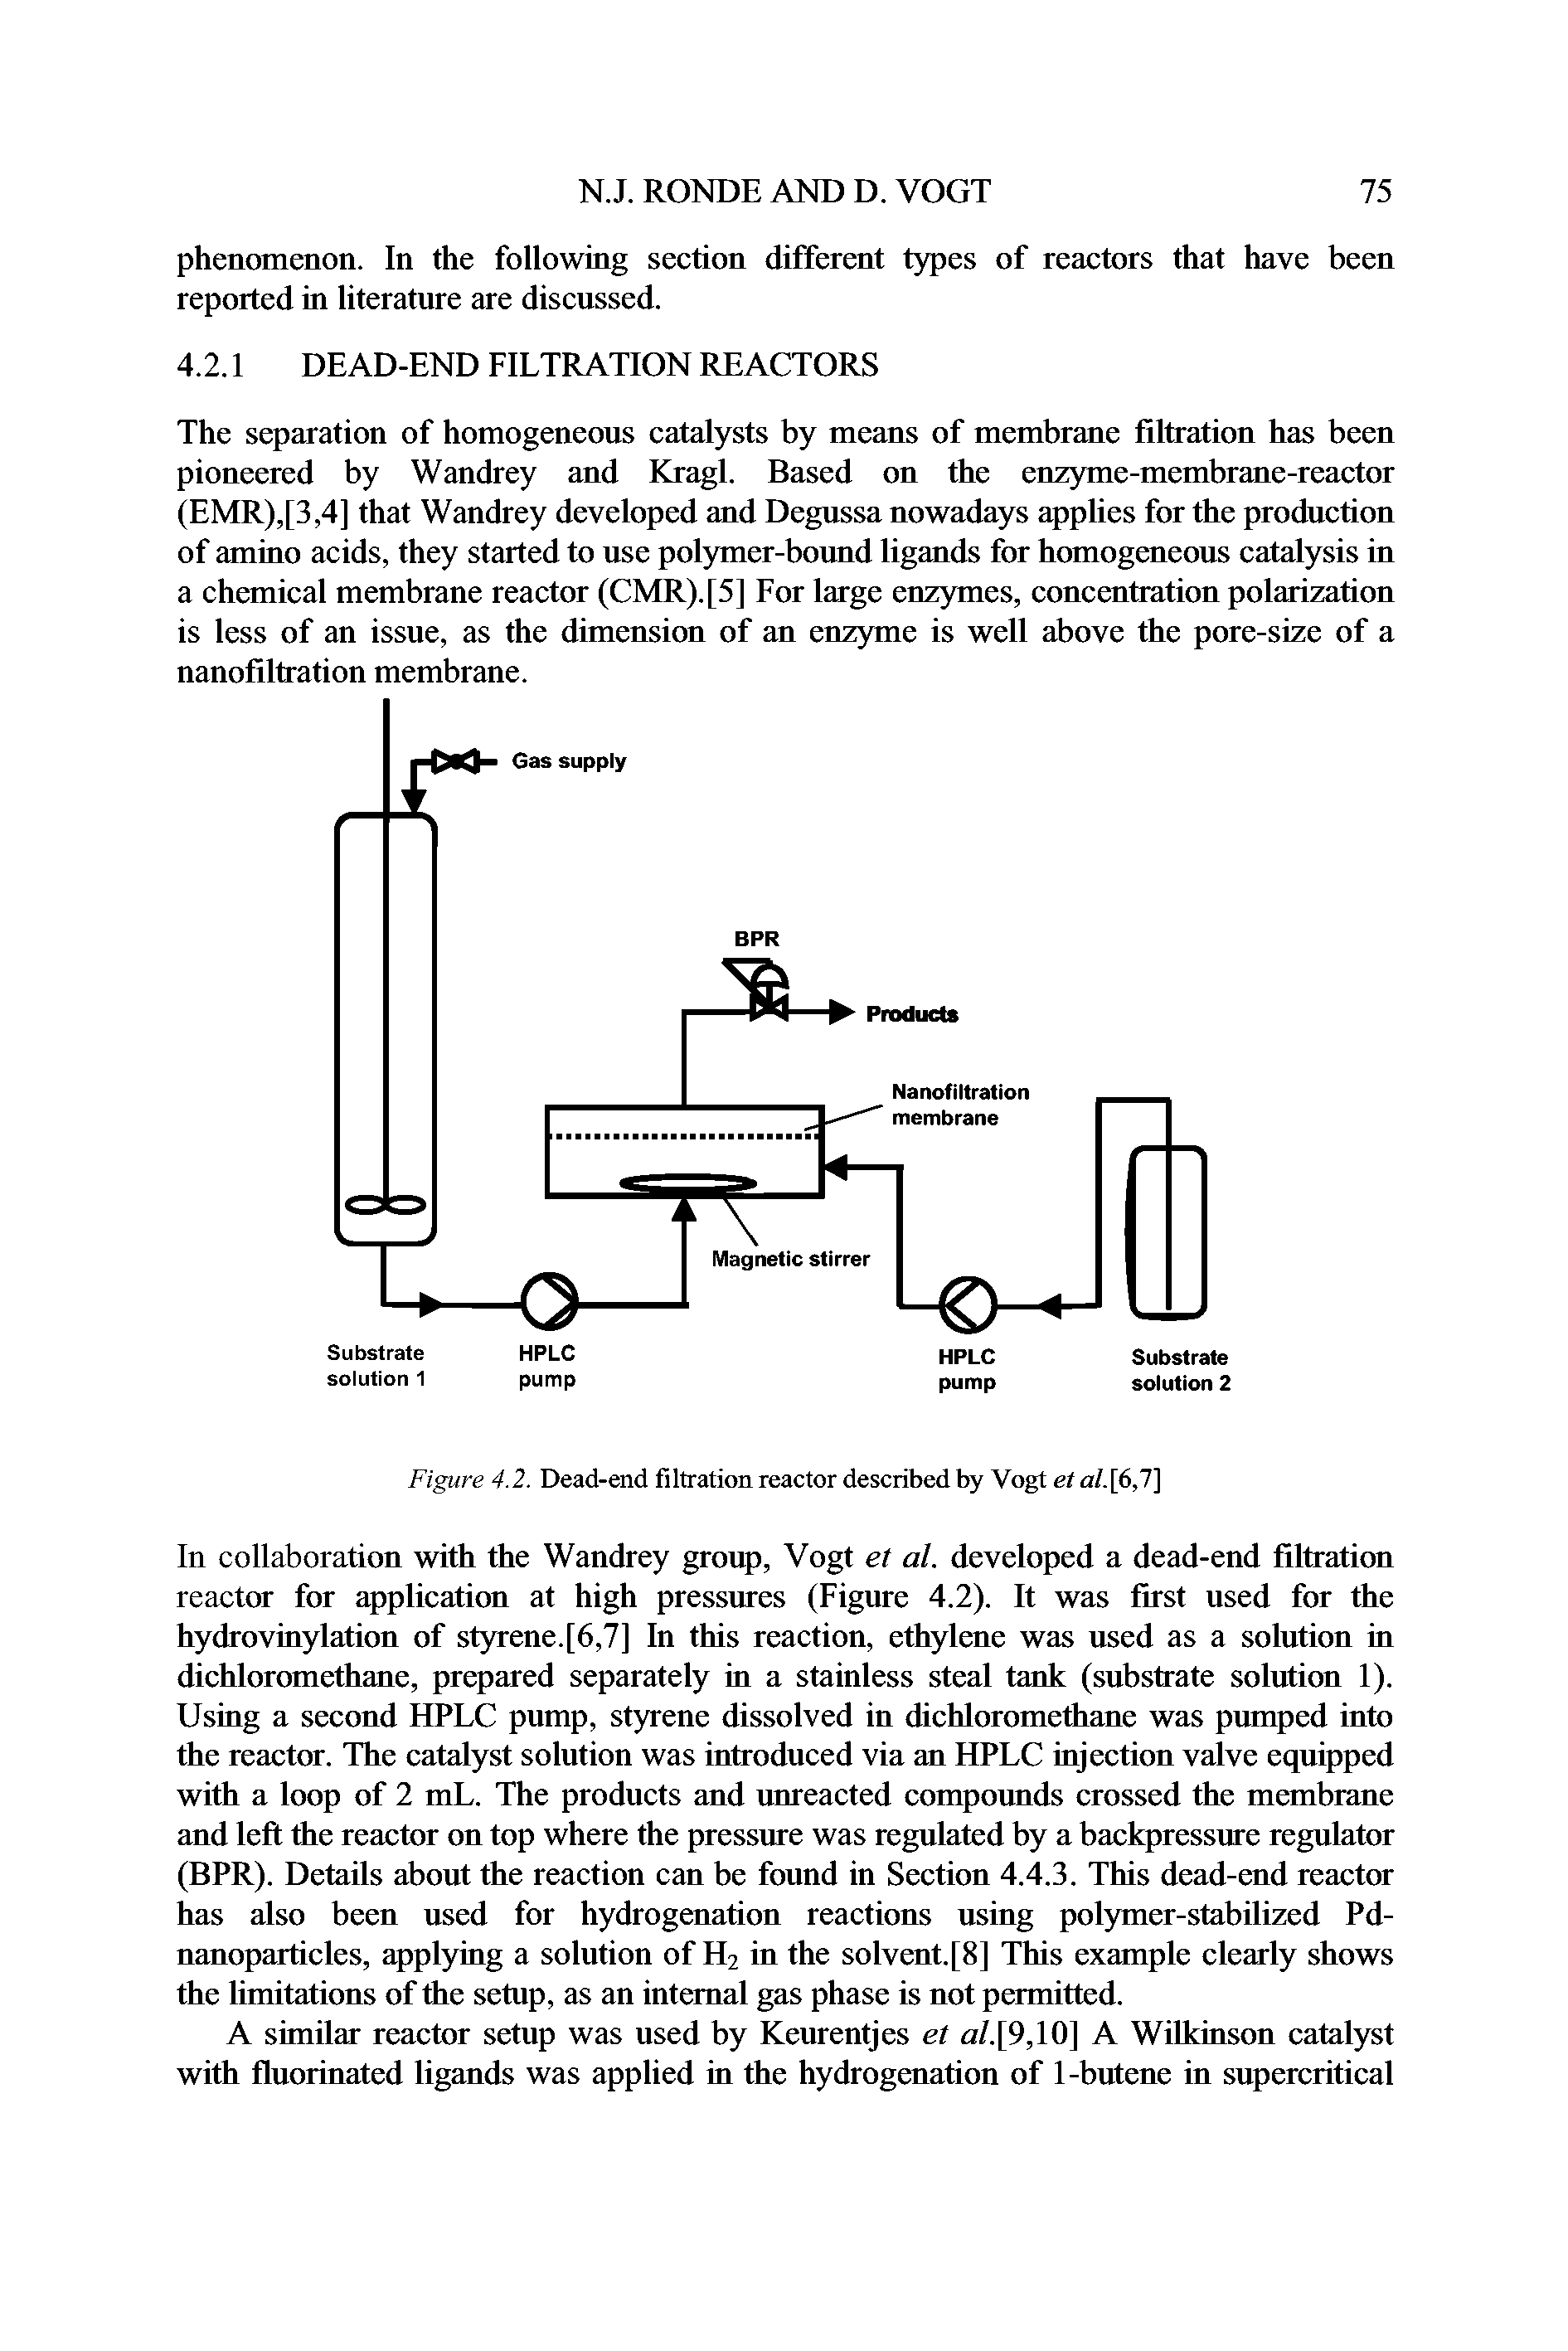 Figure 4.2. Dead-end filtration reactor described by Vogt et <z/.[6,7]...